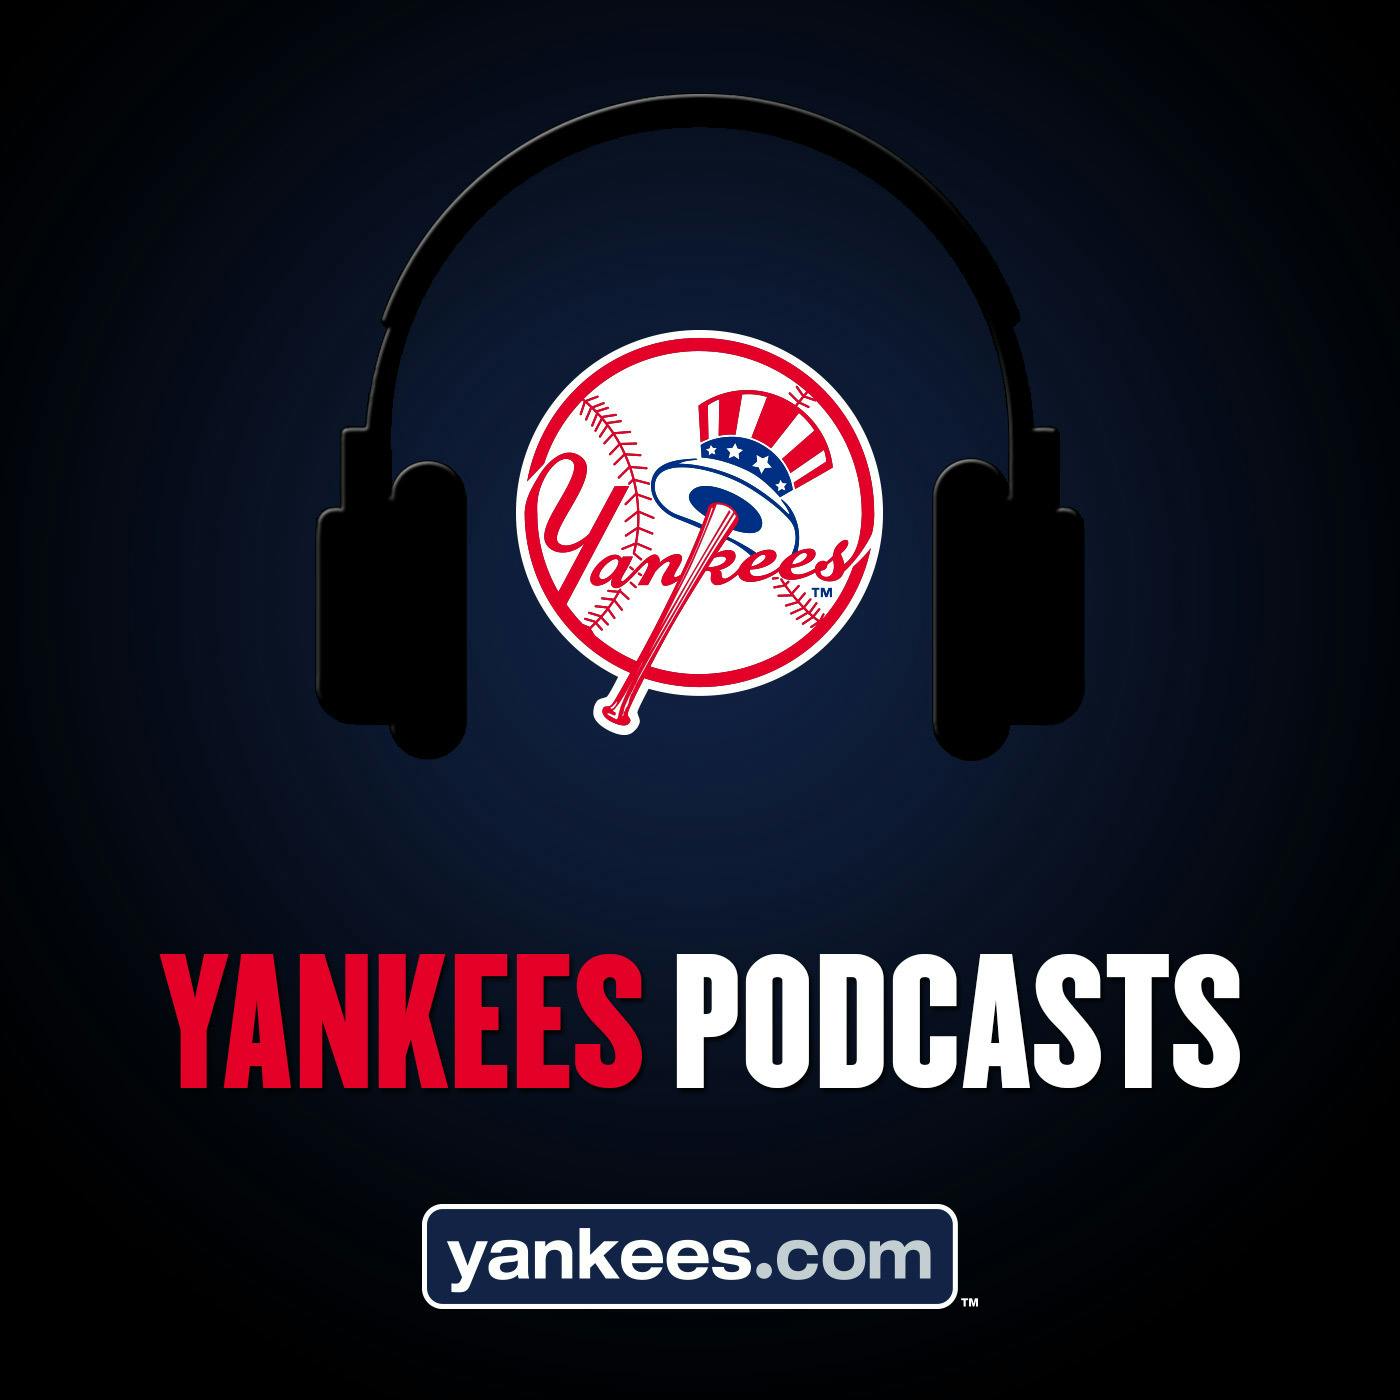 Yankees Magazine Podcast: Episode 15